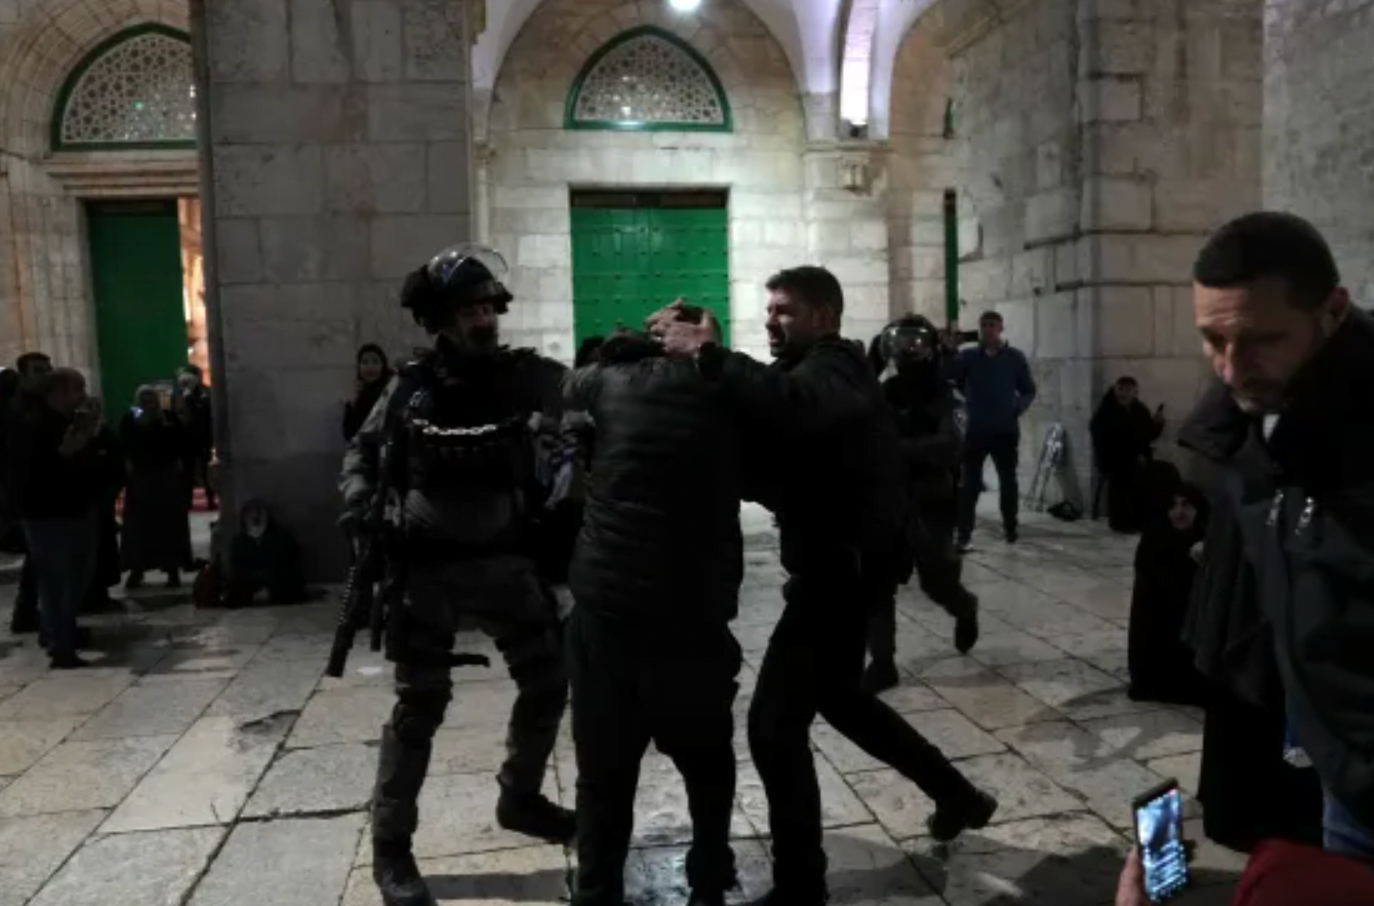 İsrail polisi sabaha karşı Ramazan namazı sırasında Mescid-i Aksa'yı baskın yaptı ve ses bombası attı.